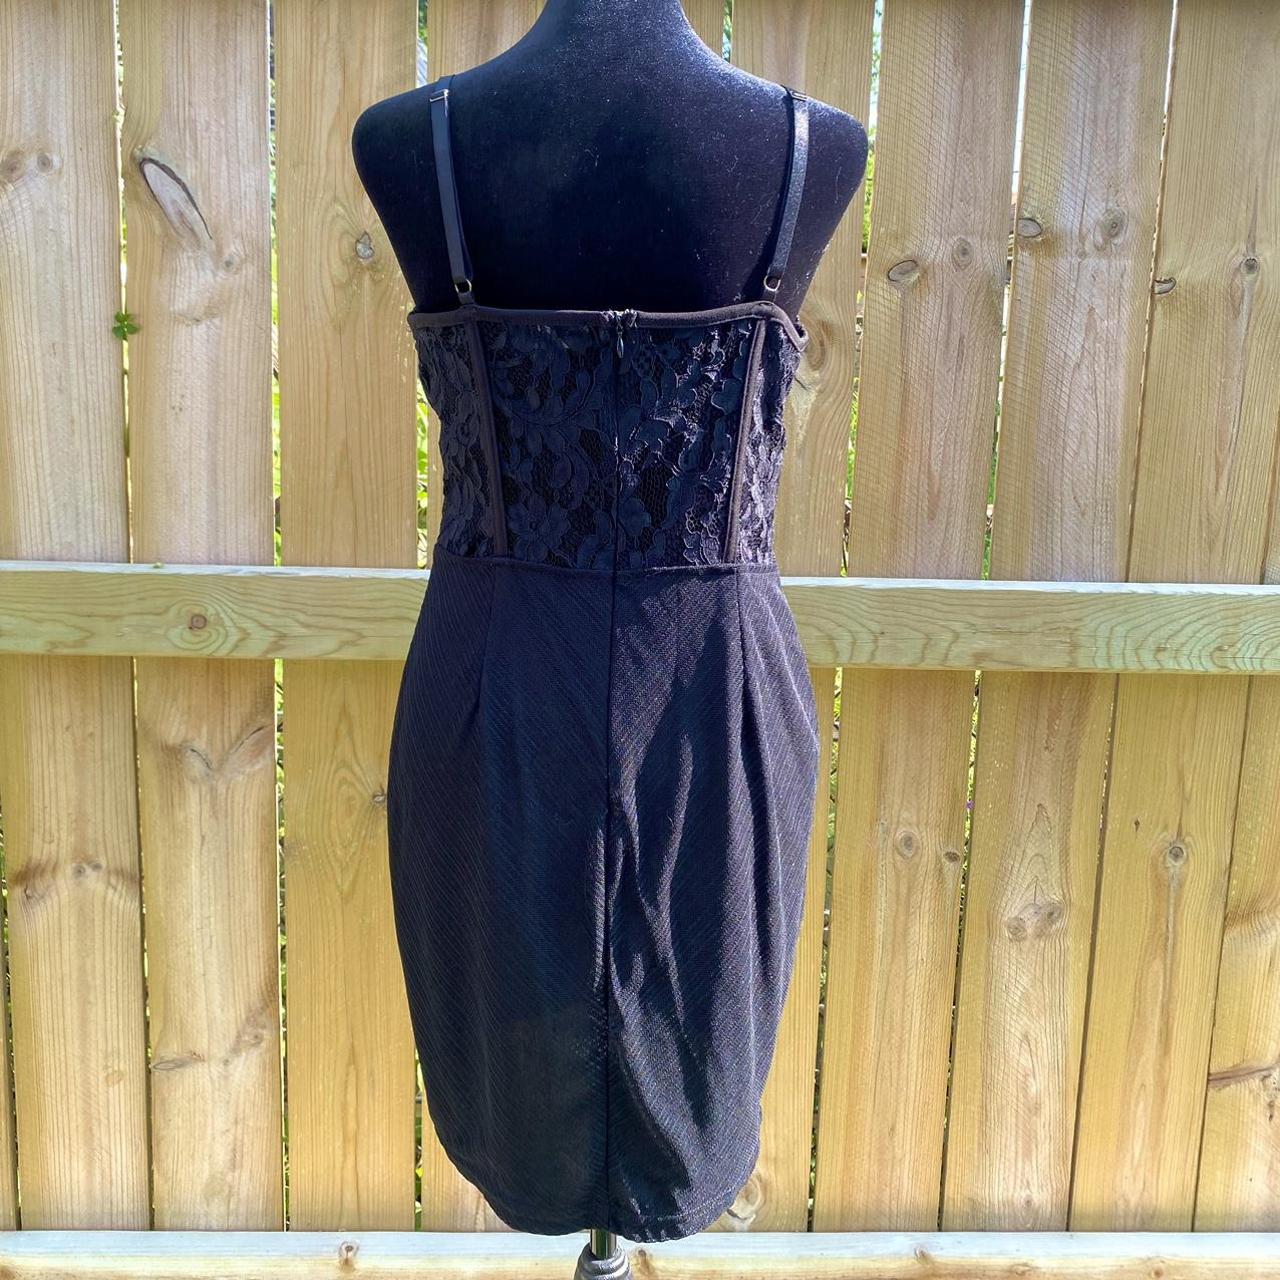 Cute Black Lace Corset Dress 🖤 Size: Large Brand:... - Depop